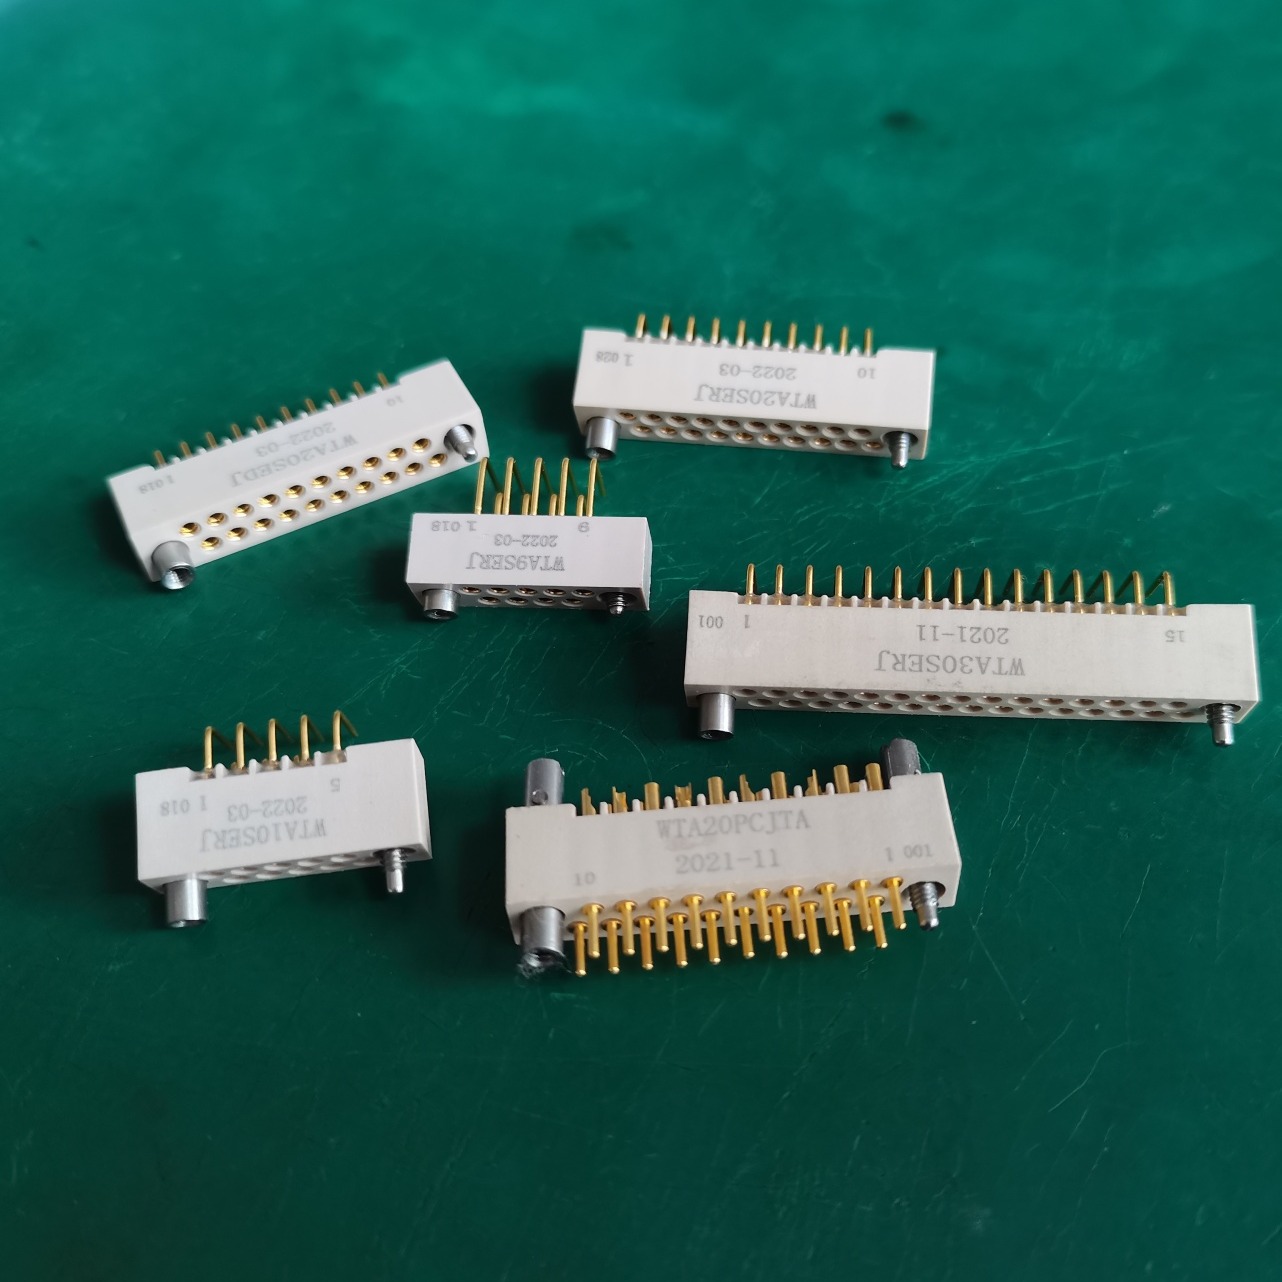 PCB板连接器  接触端子采用线簧插孔  具有适应振动环境  插拔次数达到10000次以上  带不锈钢螺丝锁紧图片